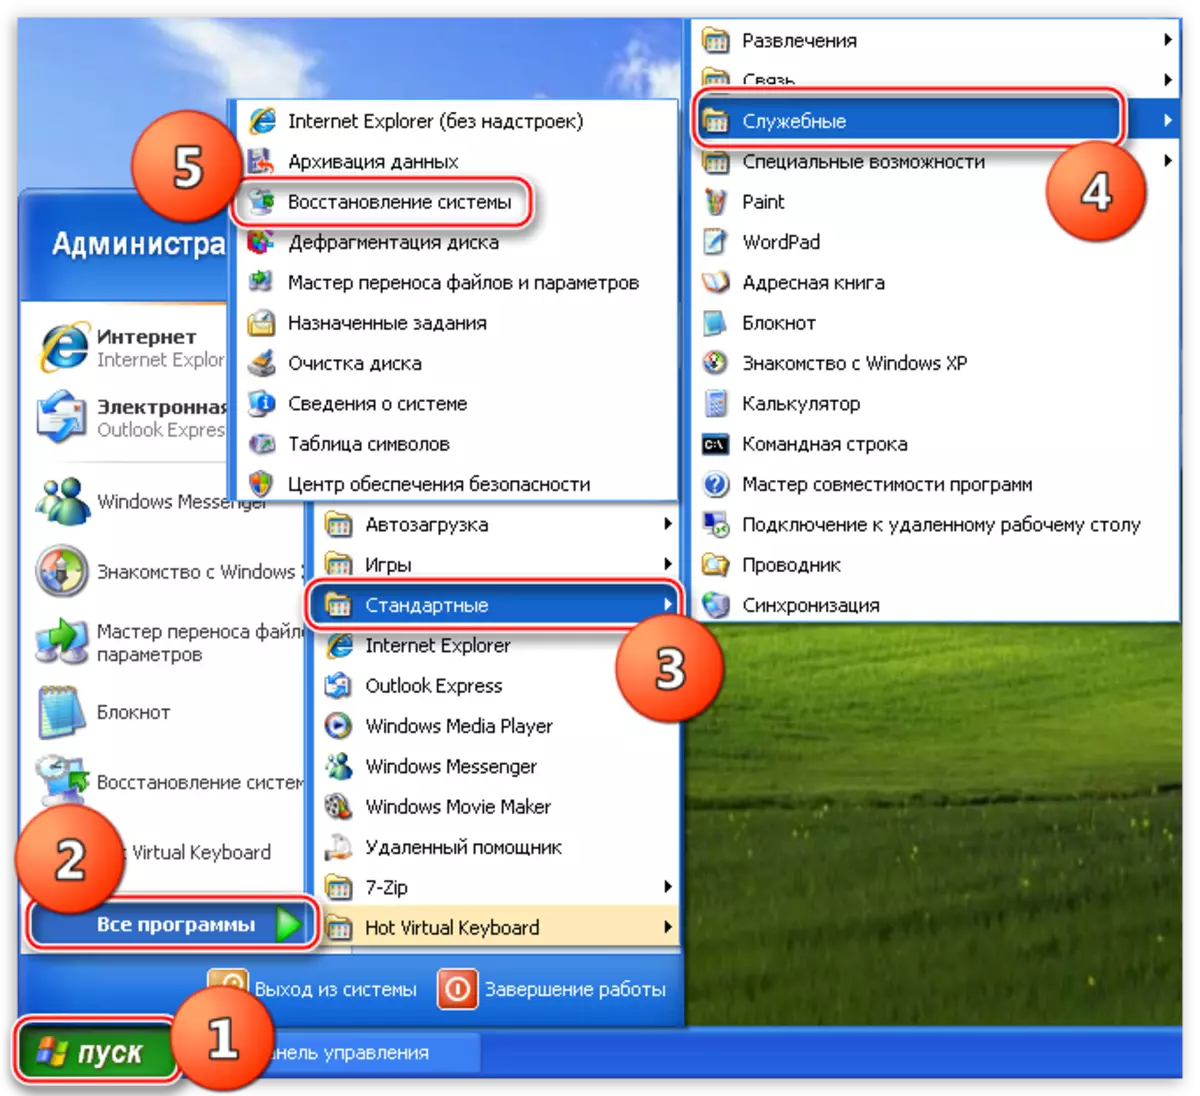 Access sa Utility Restore System gamit ang Start menu sa Windows XP operating system